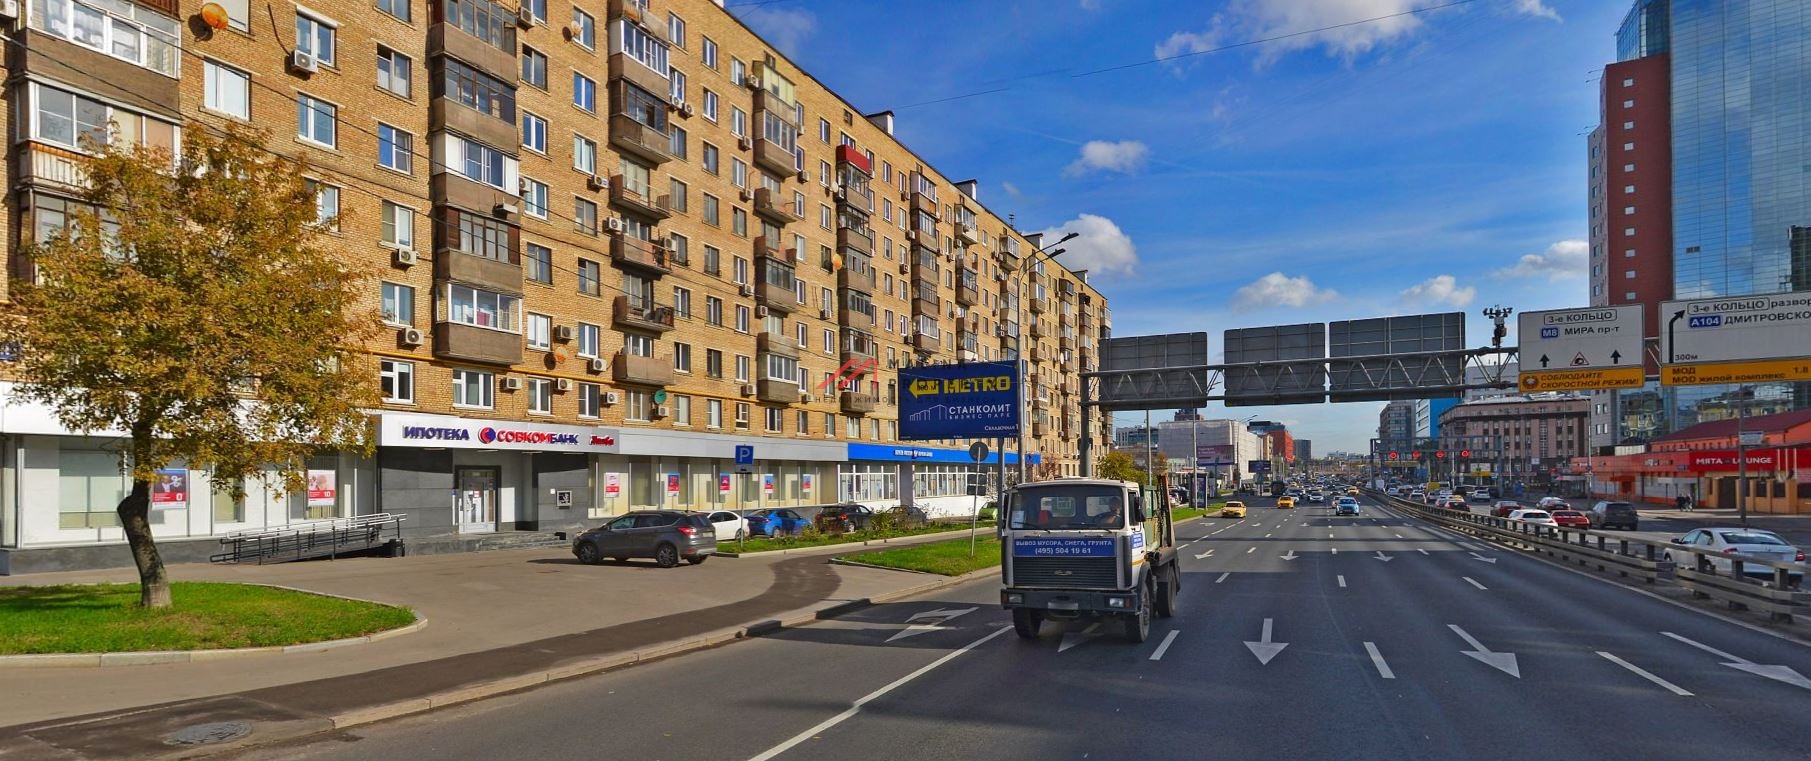 Аренда коммерческого помещения в районе метро Савёловская